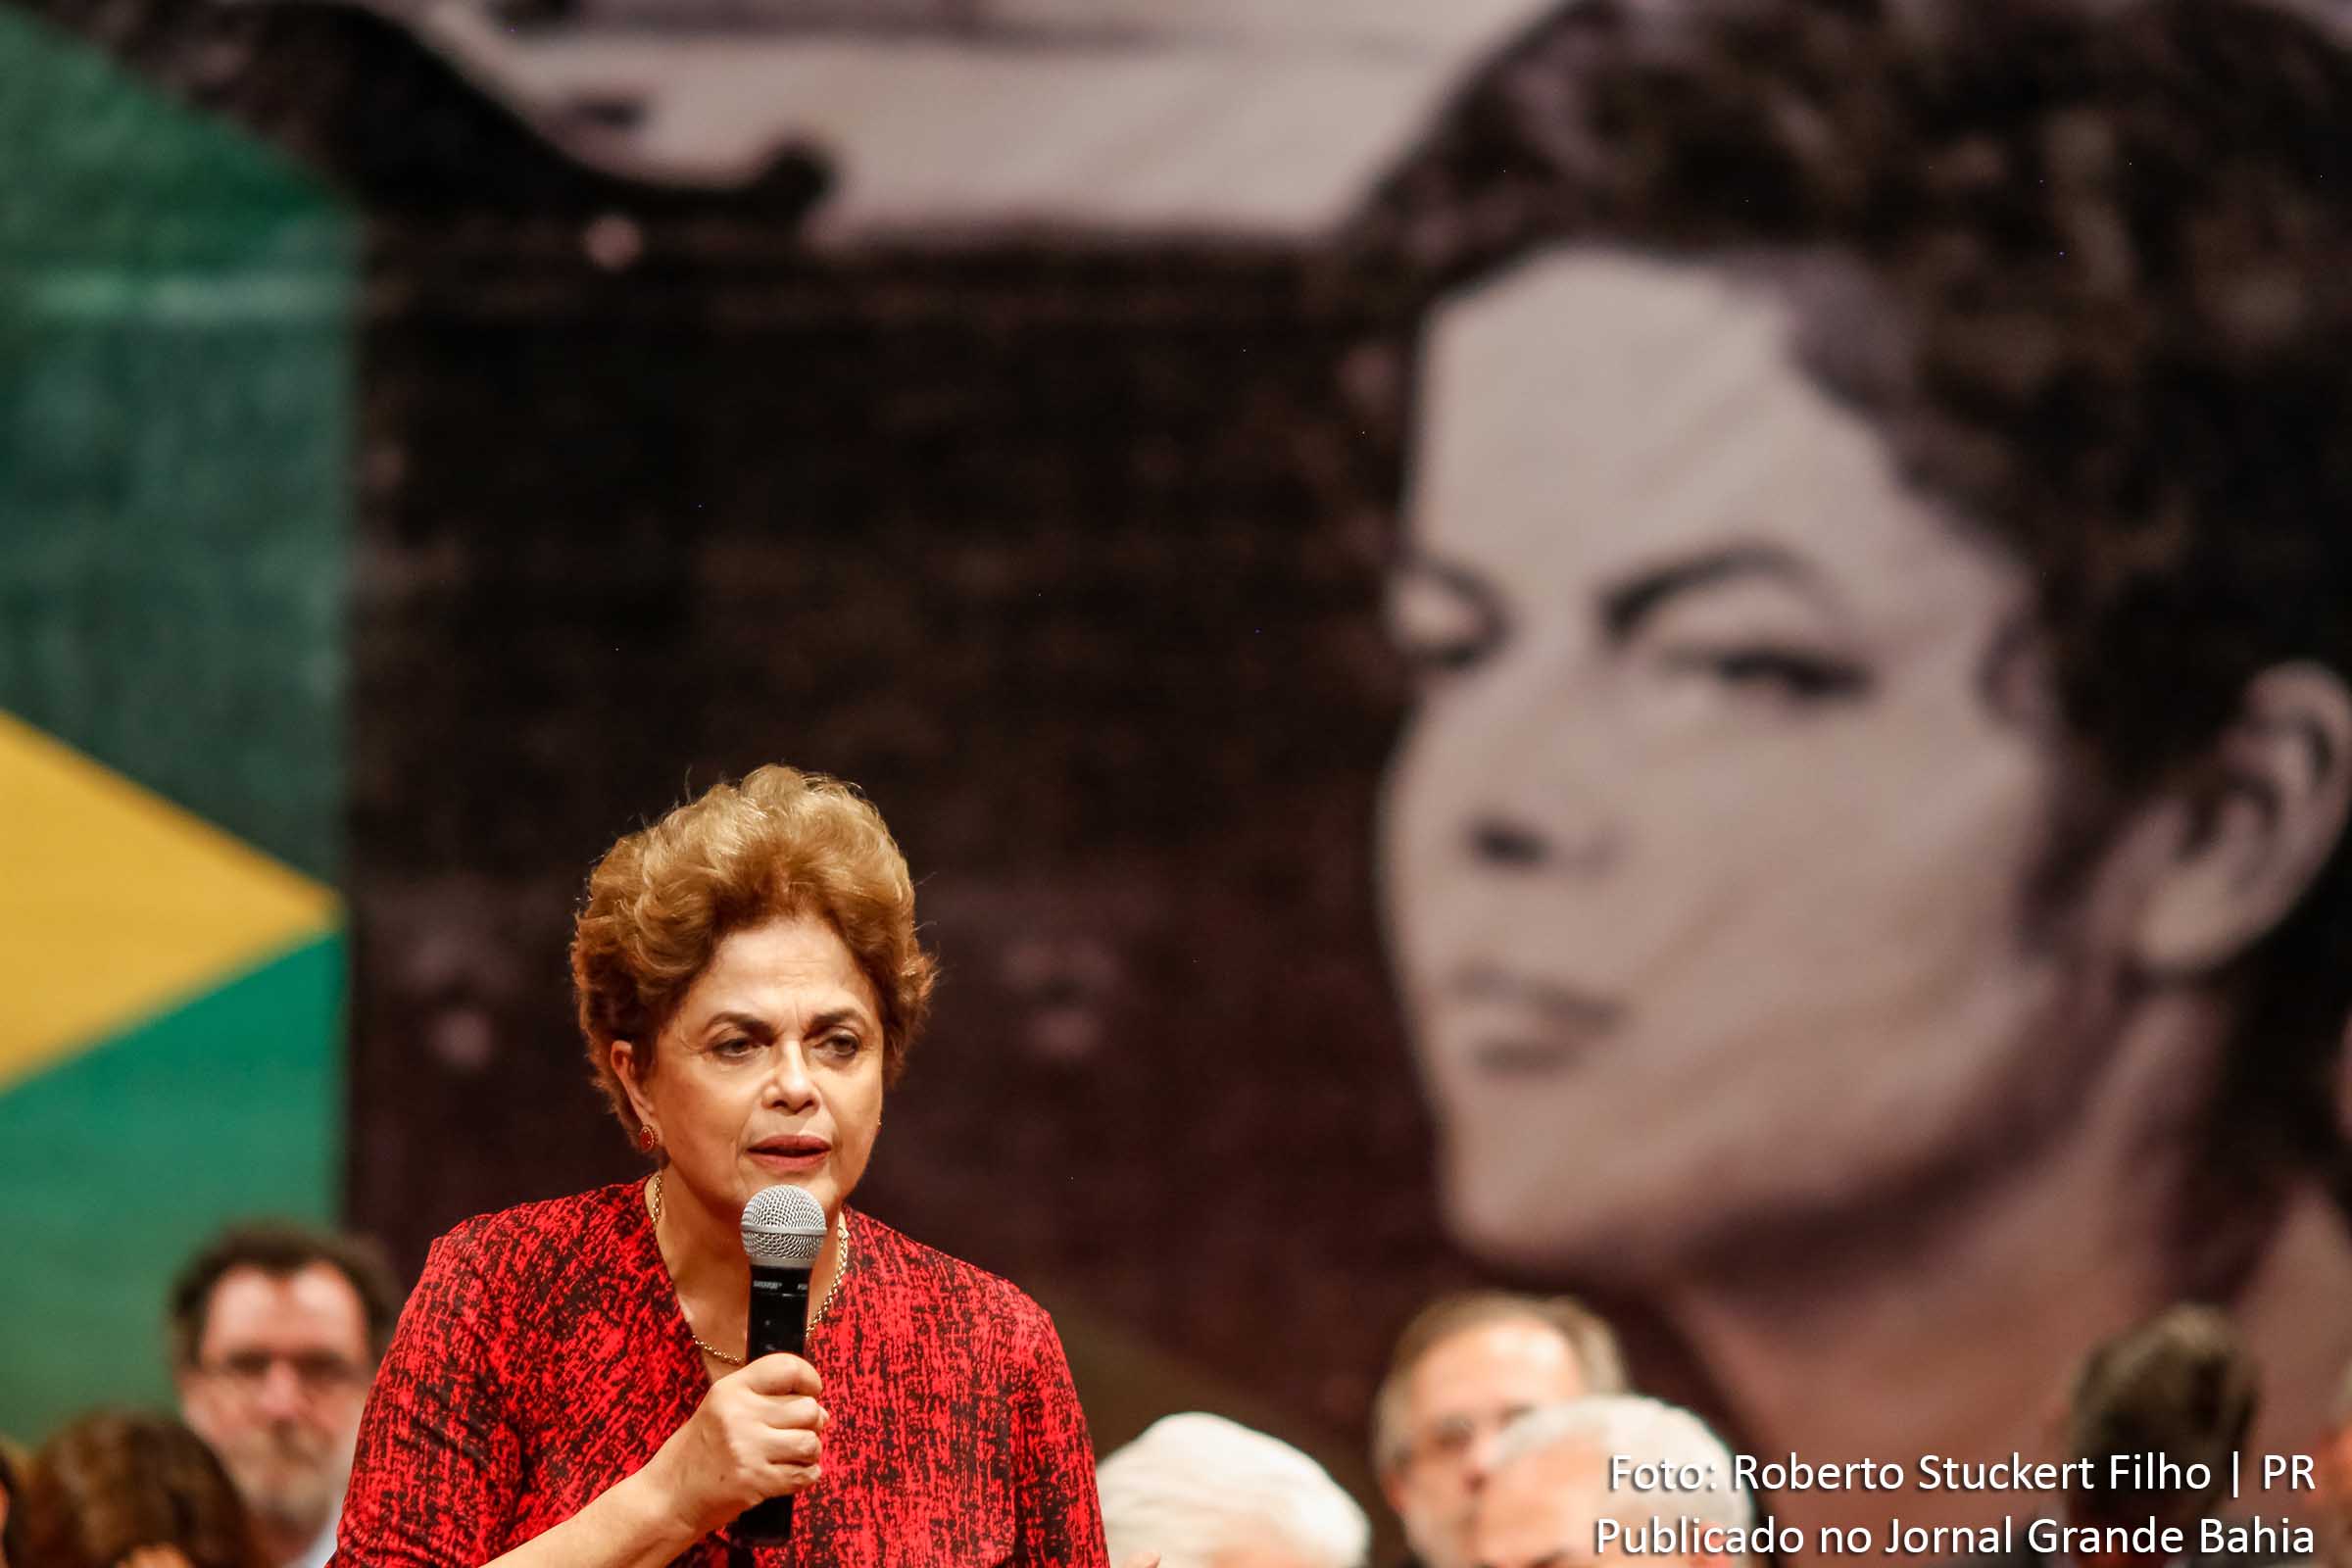 Dilma Vana Rousseff: Por isso, afirmamos que, se consumado o impeachment sem crime de responsabilidade, teríamos um golpe de estado.